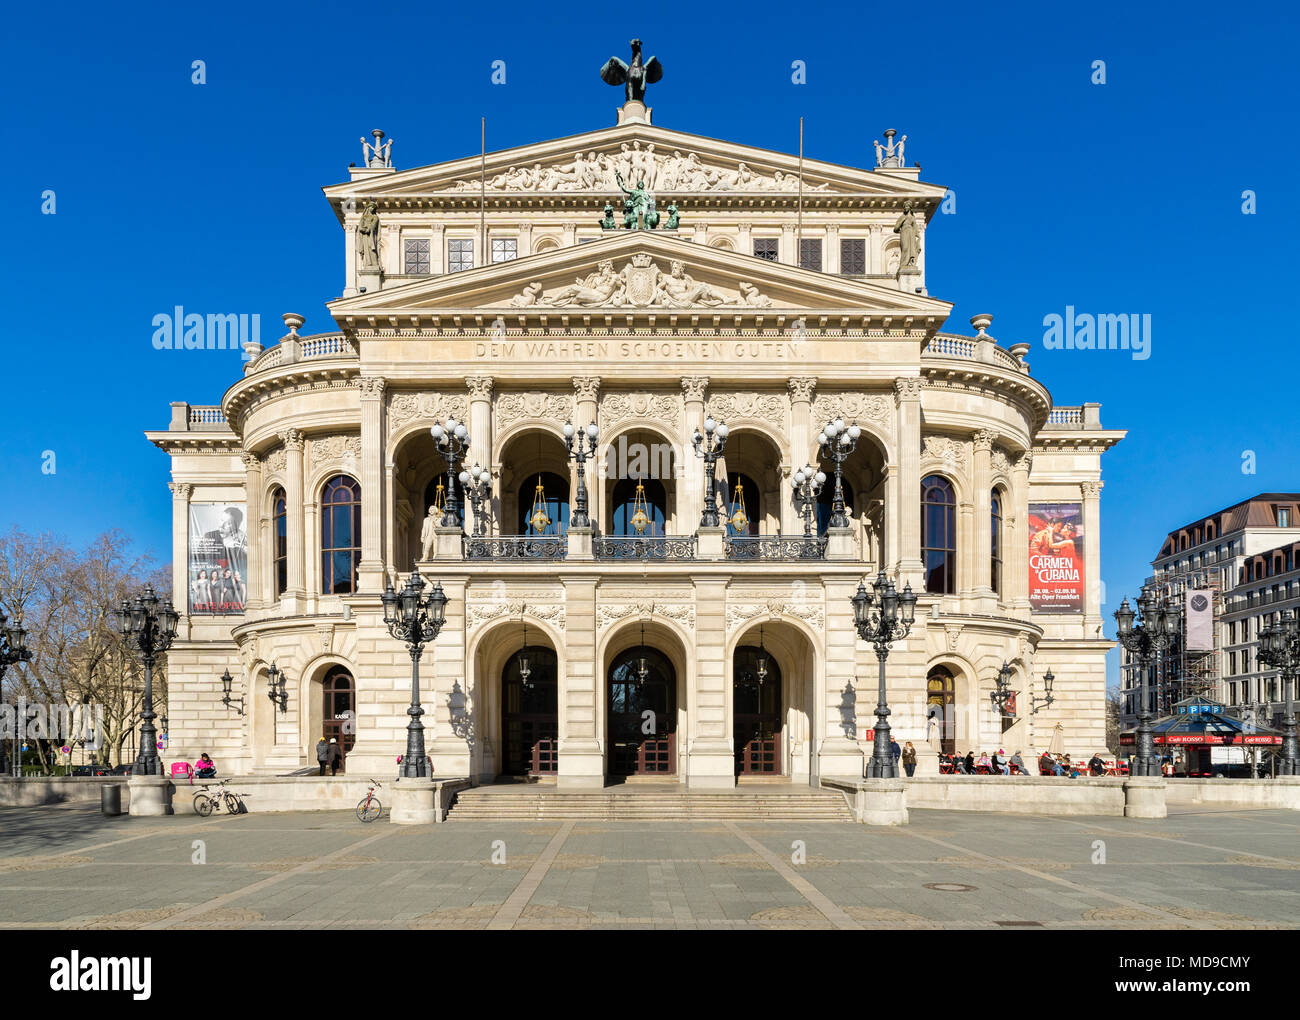 Alte Oper, Place de l'Opéra, Frankfurt am Main, Hesse, Allemagne Banque D'Images